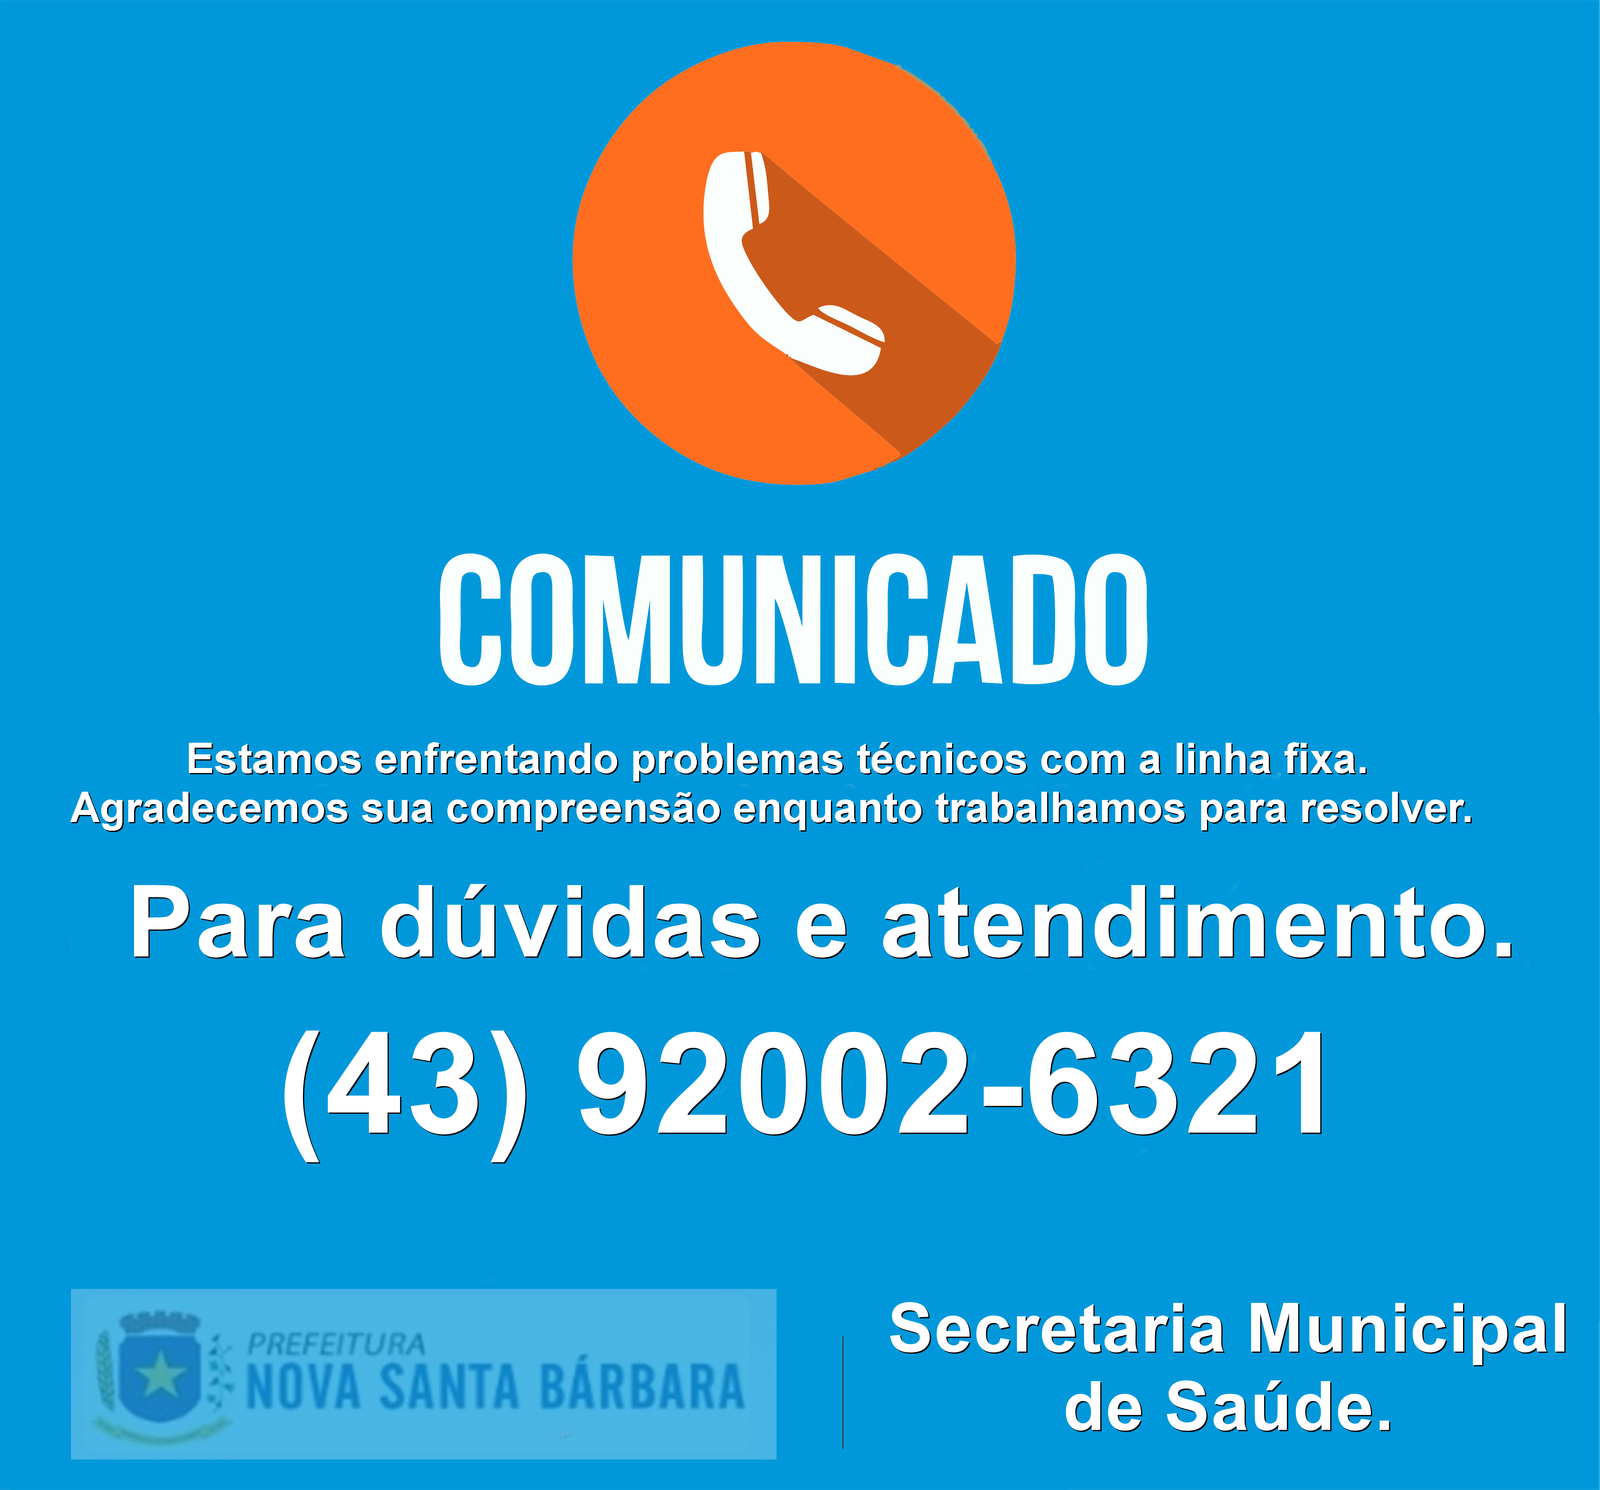 A Secretaria de Saúde informa que nosso novo número de telefone para contato é 43 92002-6321.